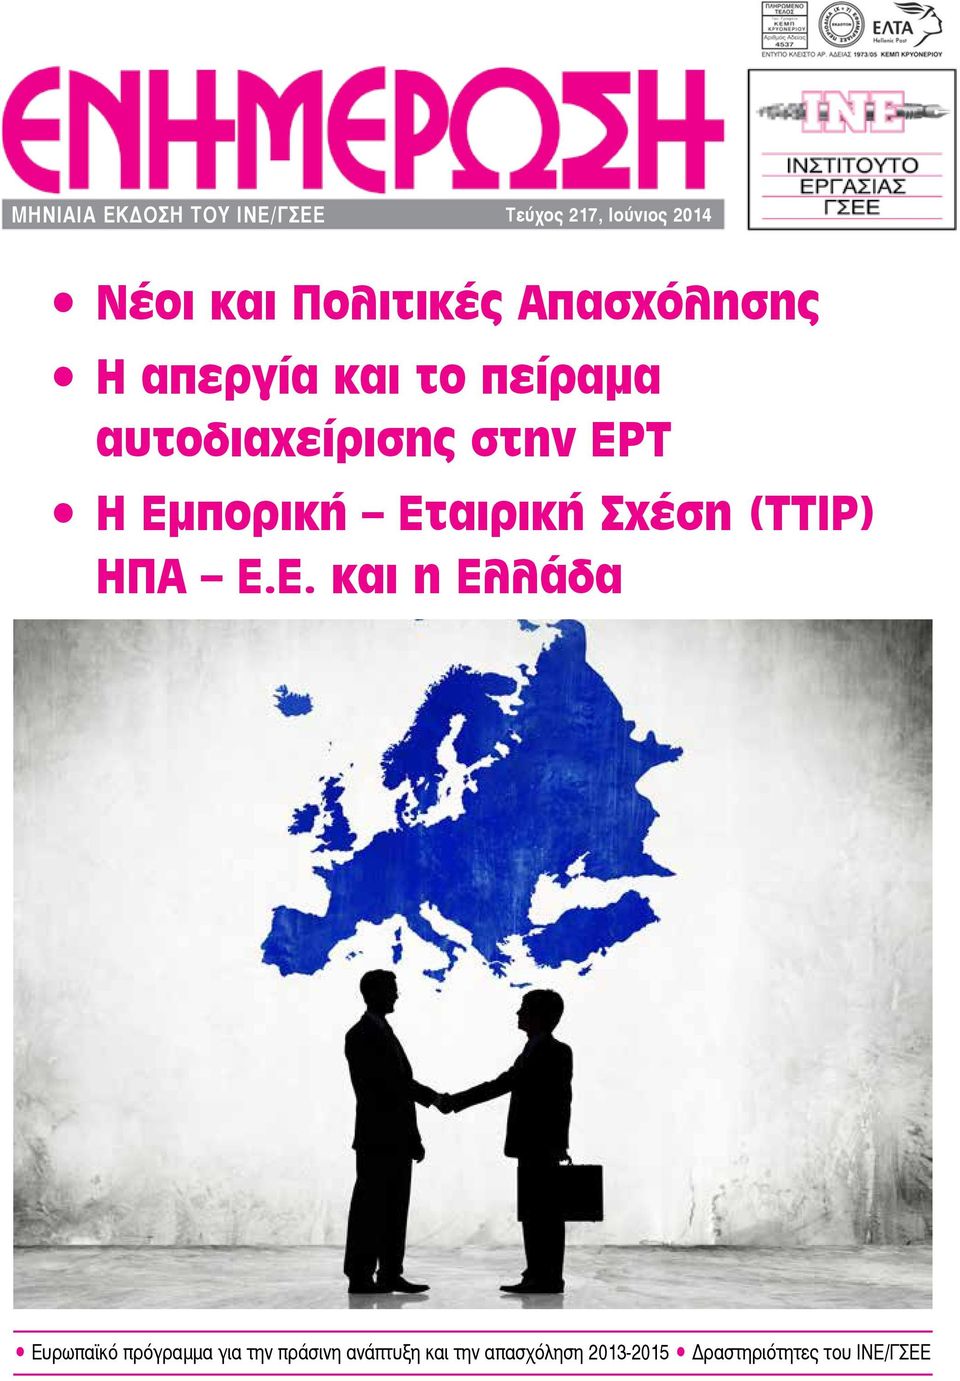 Εταιρική Σχέση (ΤΤΙΡ) ΗΠΑ Ε.Ε. και η Ελλάδα Ευρωπαϊκό πρόγραμμα για την